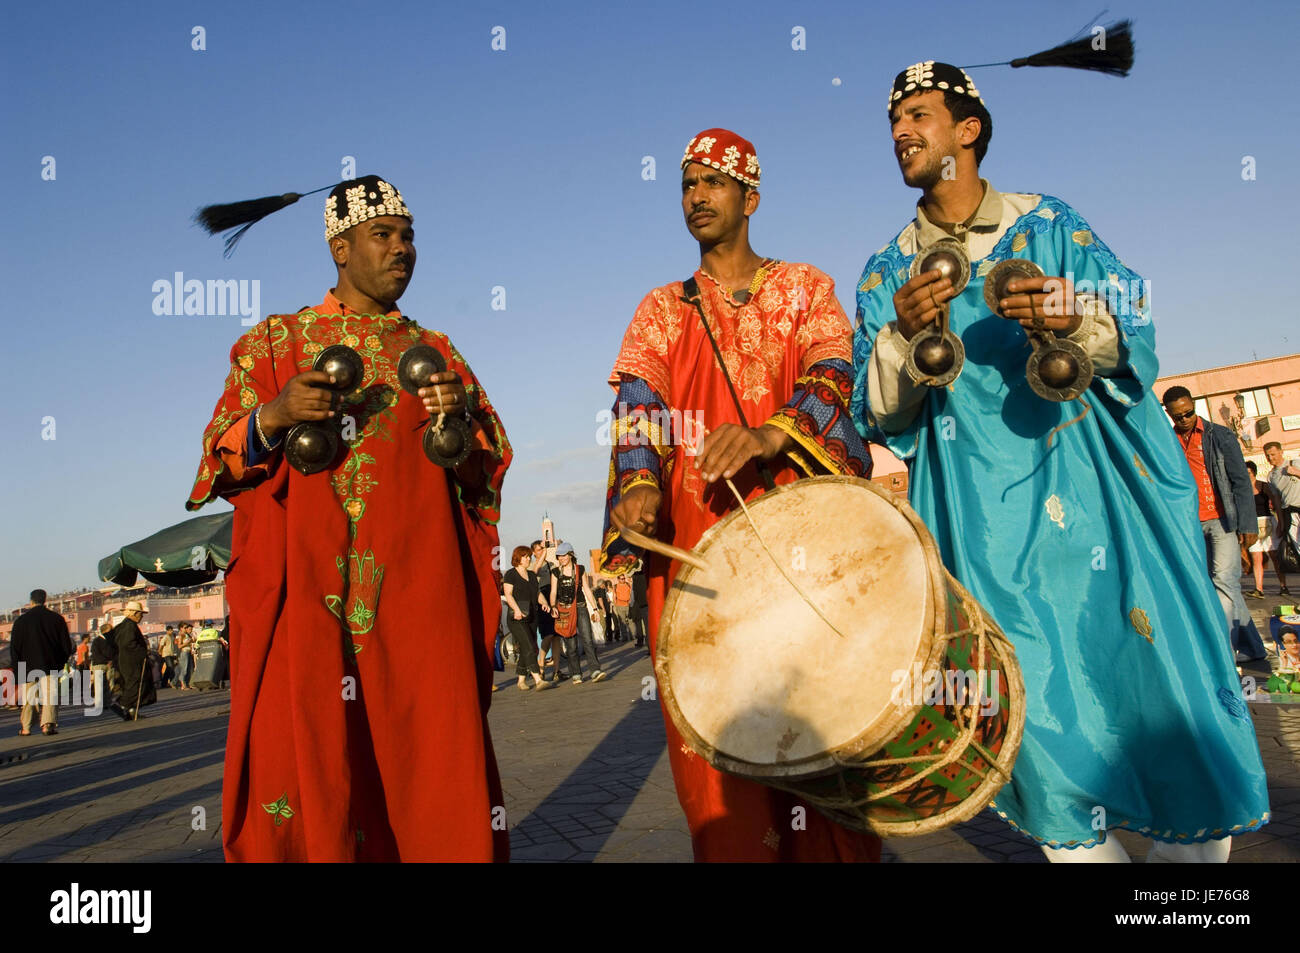 Il Marocco, Marrakech, spazio Jemaa-El-Fna, musicista, tre, nessun modello di rilascio, Africa, Nord Africa, luogo di interesse, la cultura, la persona, la gente del posto che i marocchini, vestiti, tradizionalmente, copricapo, nappe, strumenti musicali, cembali, tamburo, musica, fare musica, Foto Stock